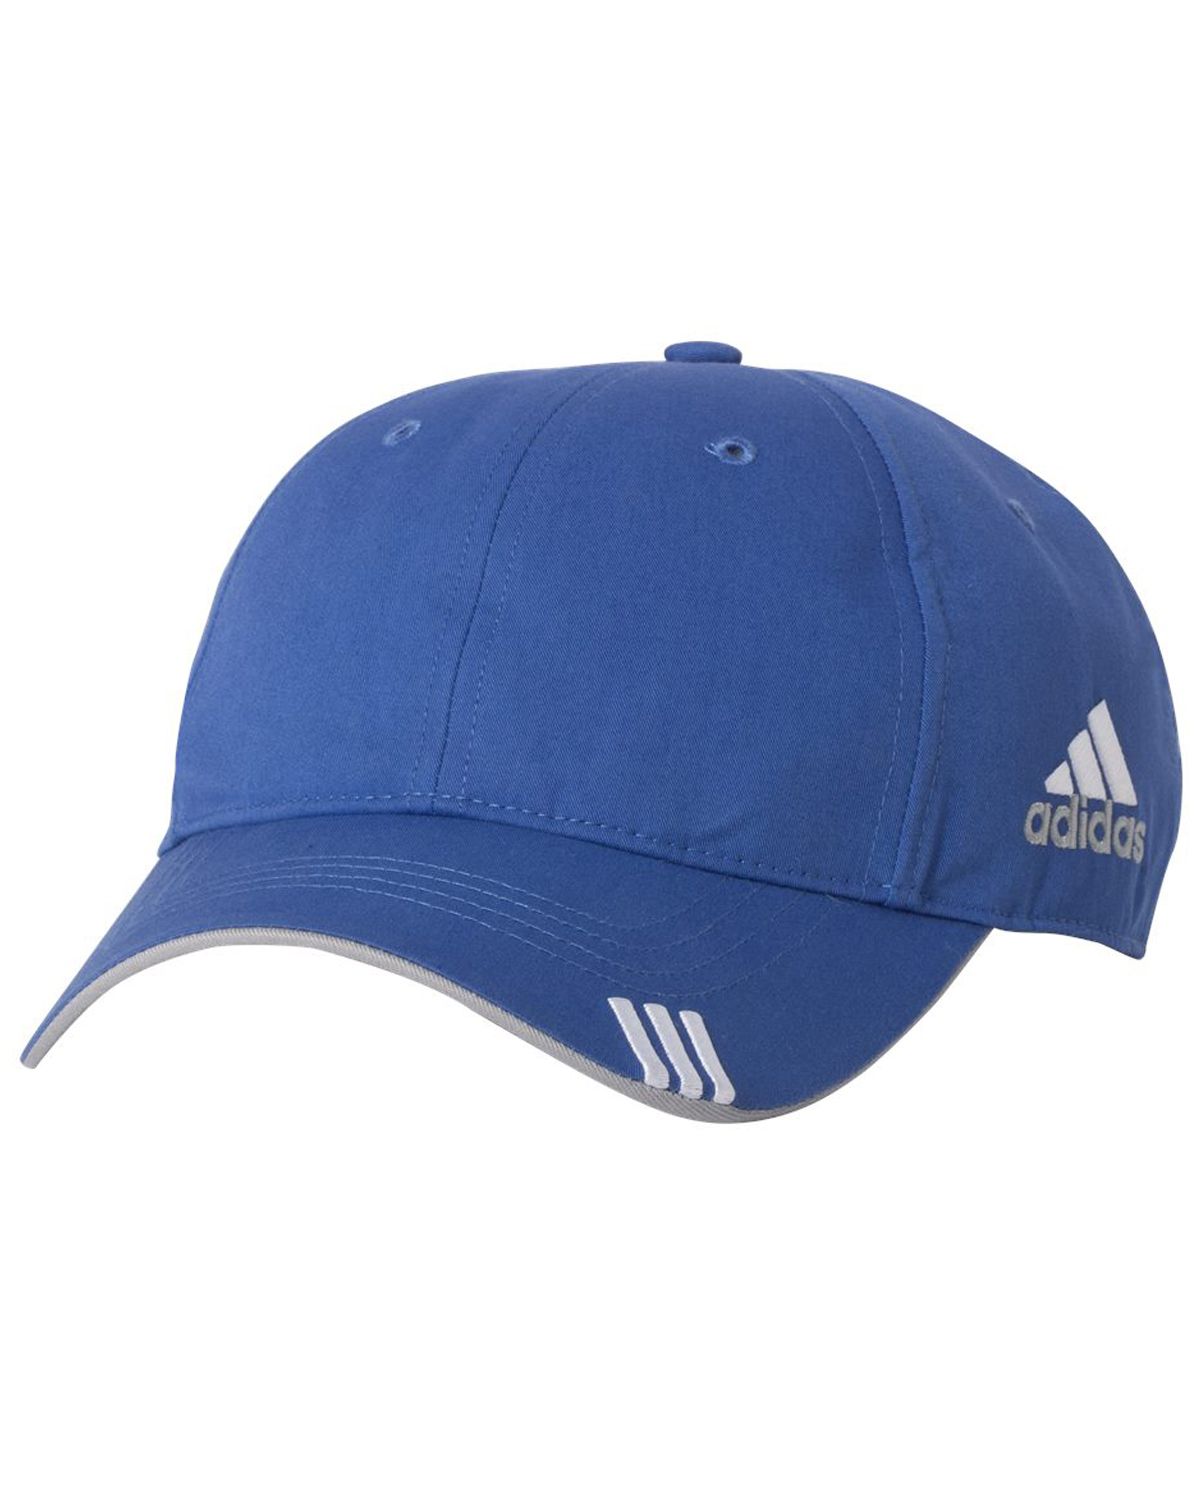 Adidas Golf A626 Lightweight Cotton Cap